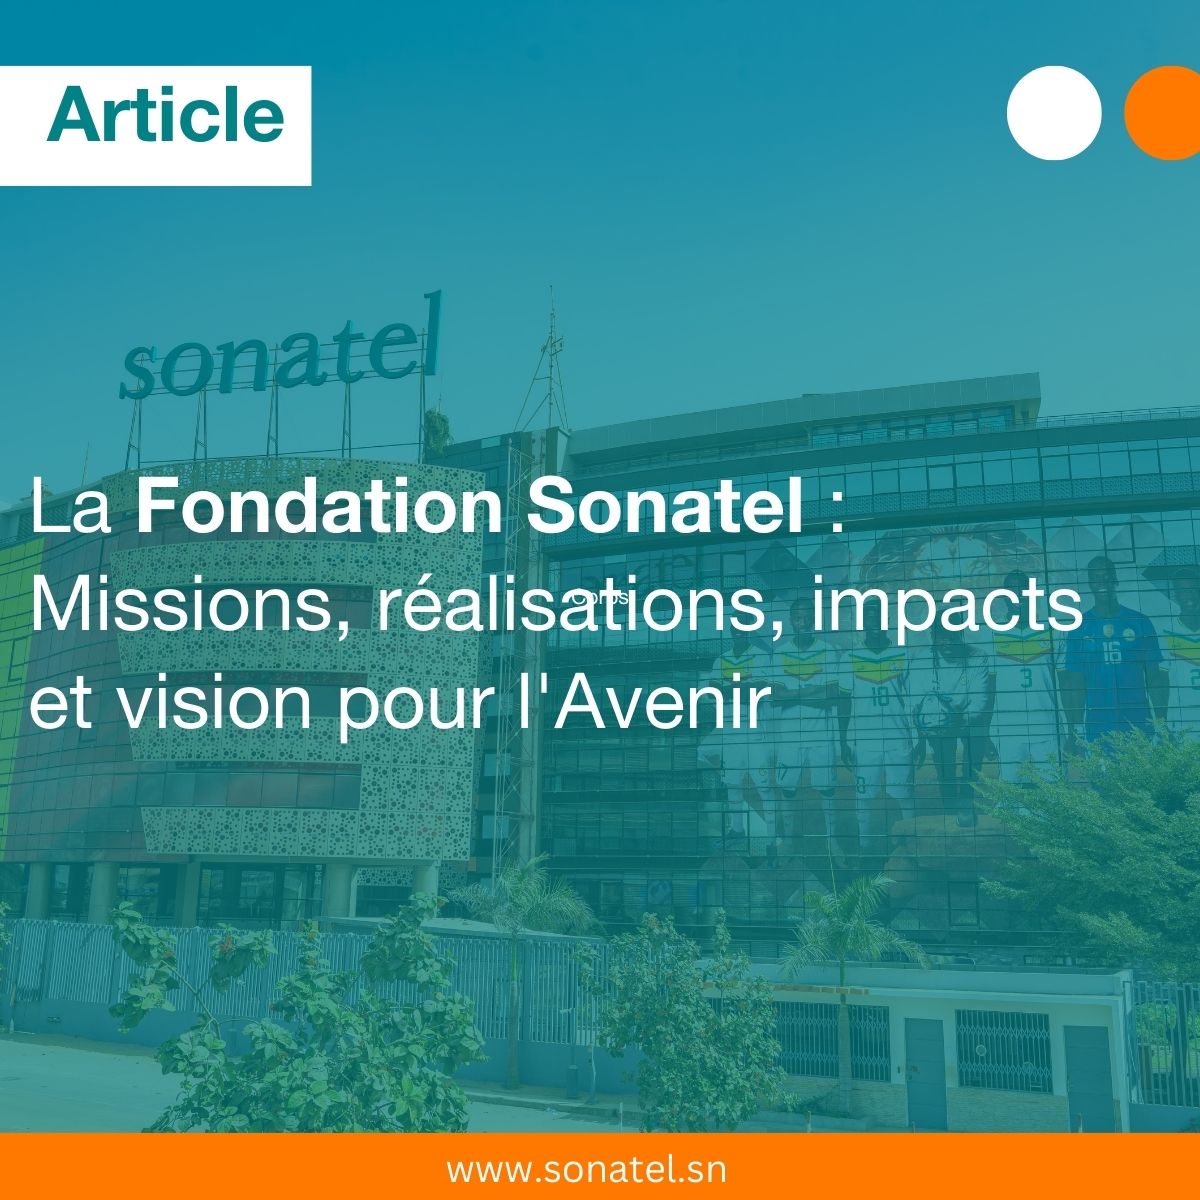 La Fondation Sonatel : un acteur clé pour l'évolution du Sénégal